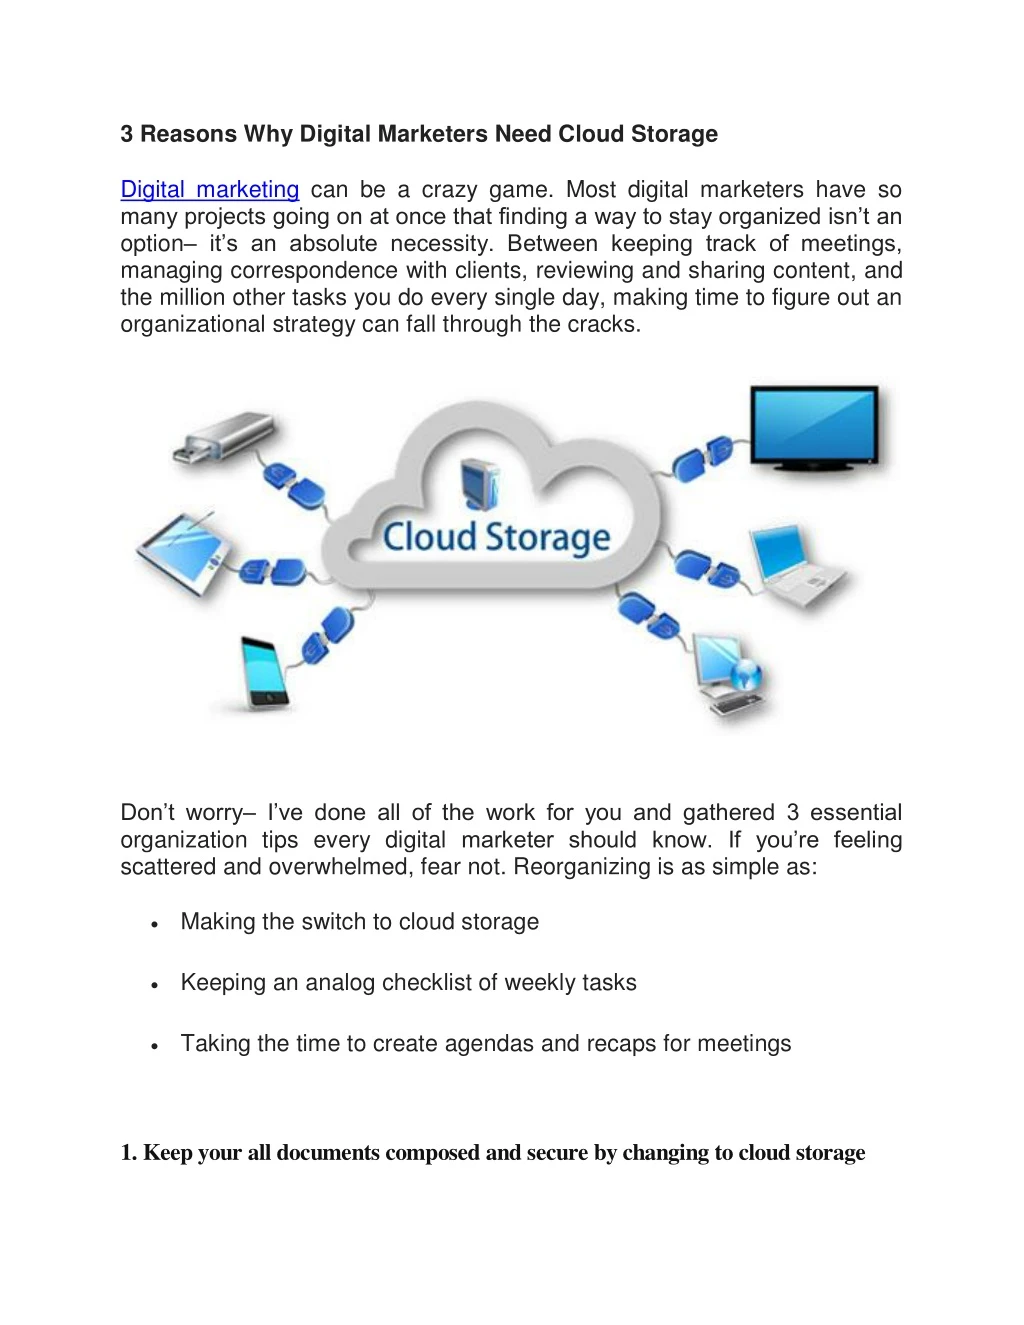 3 reasons why digital marketers need cloud storage